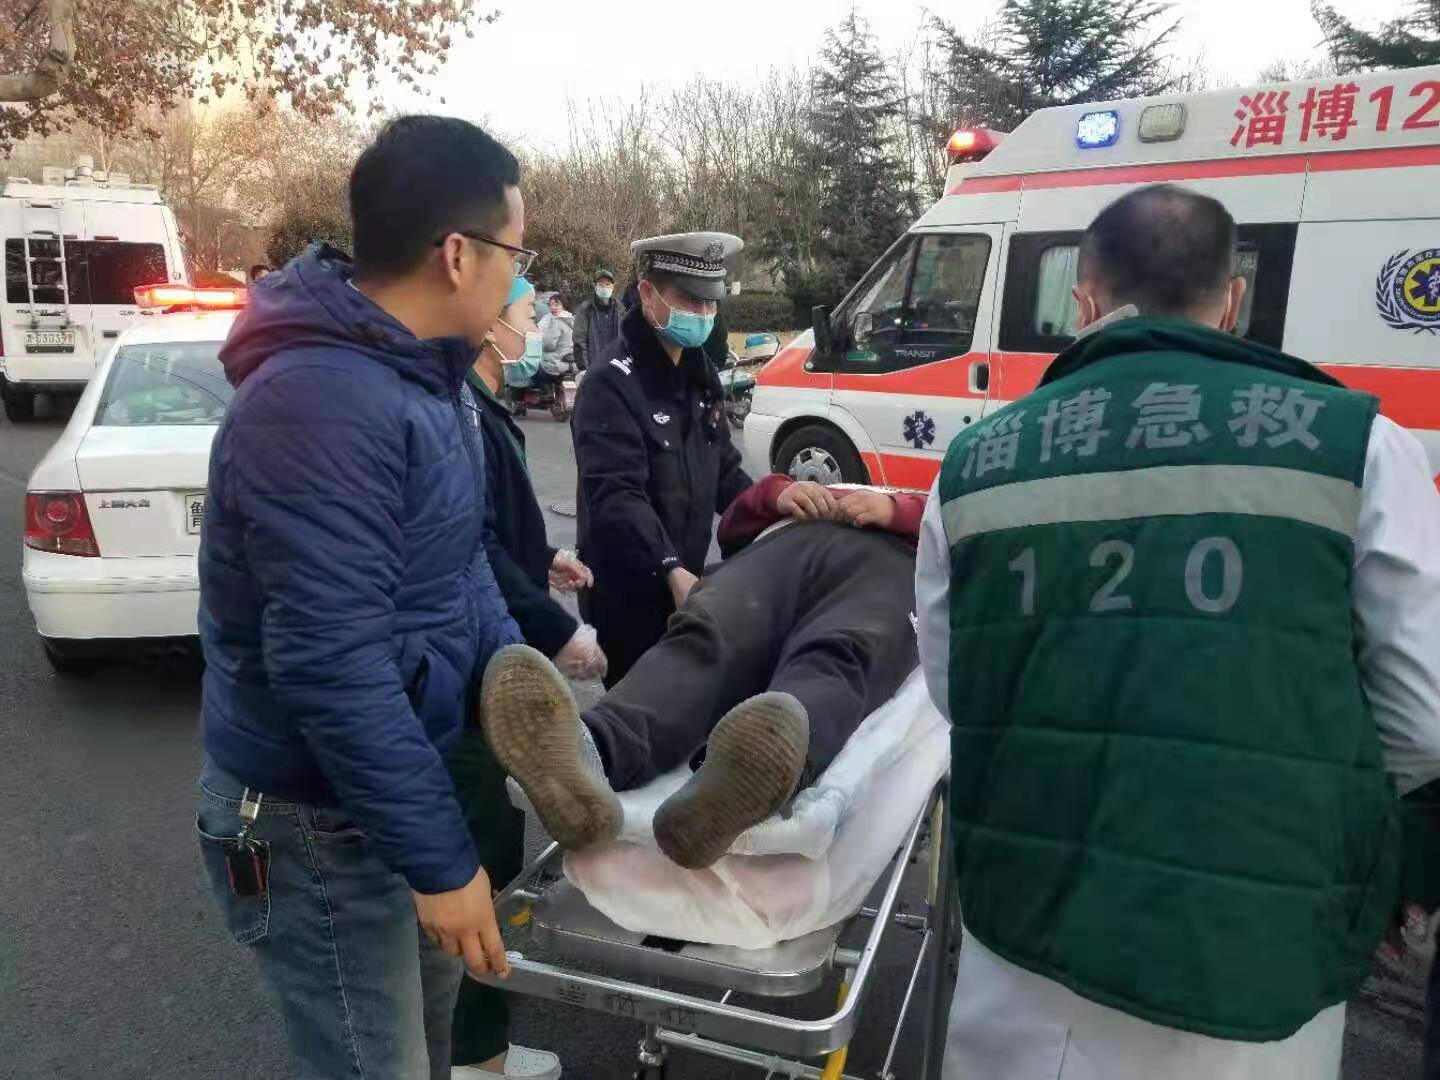 淄博一驾驶员突发高血压将车停在路口 市民交警相助紧急送医